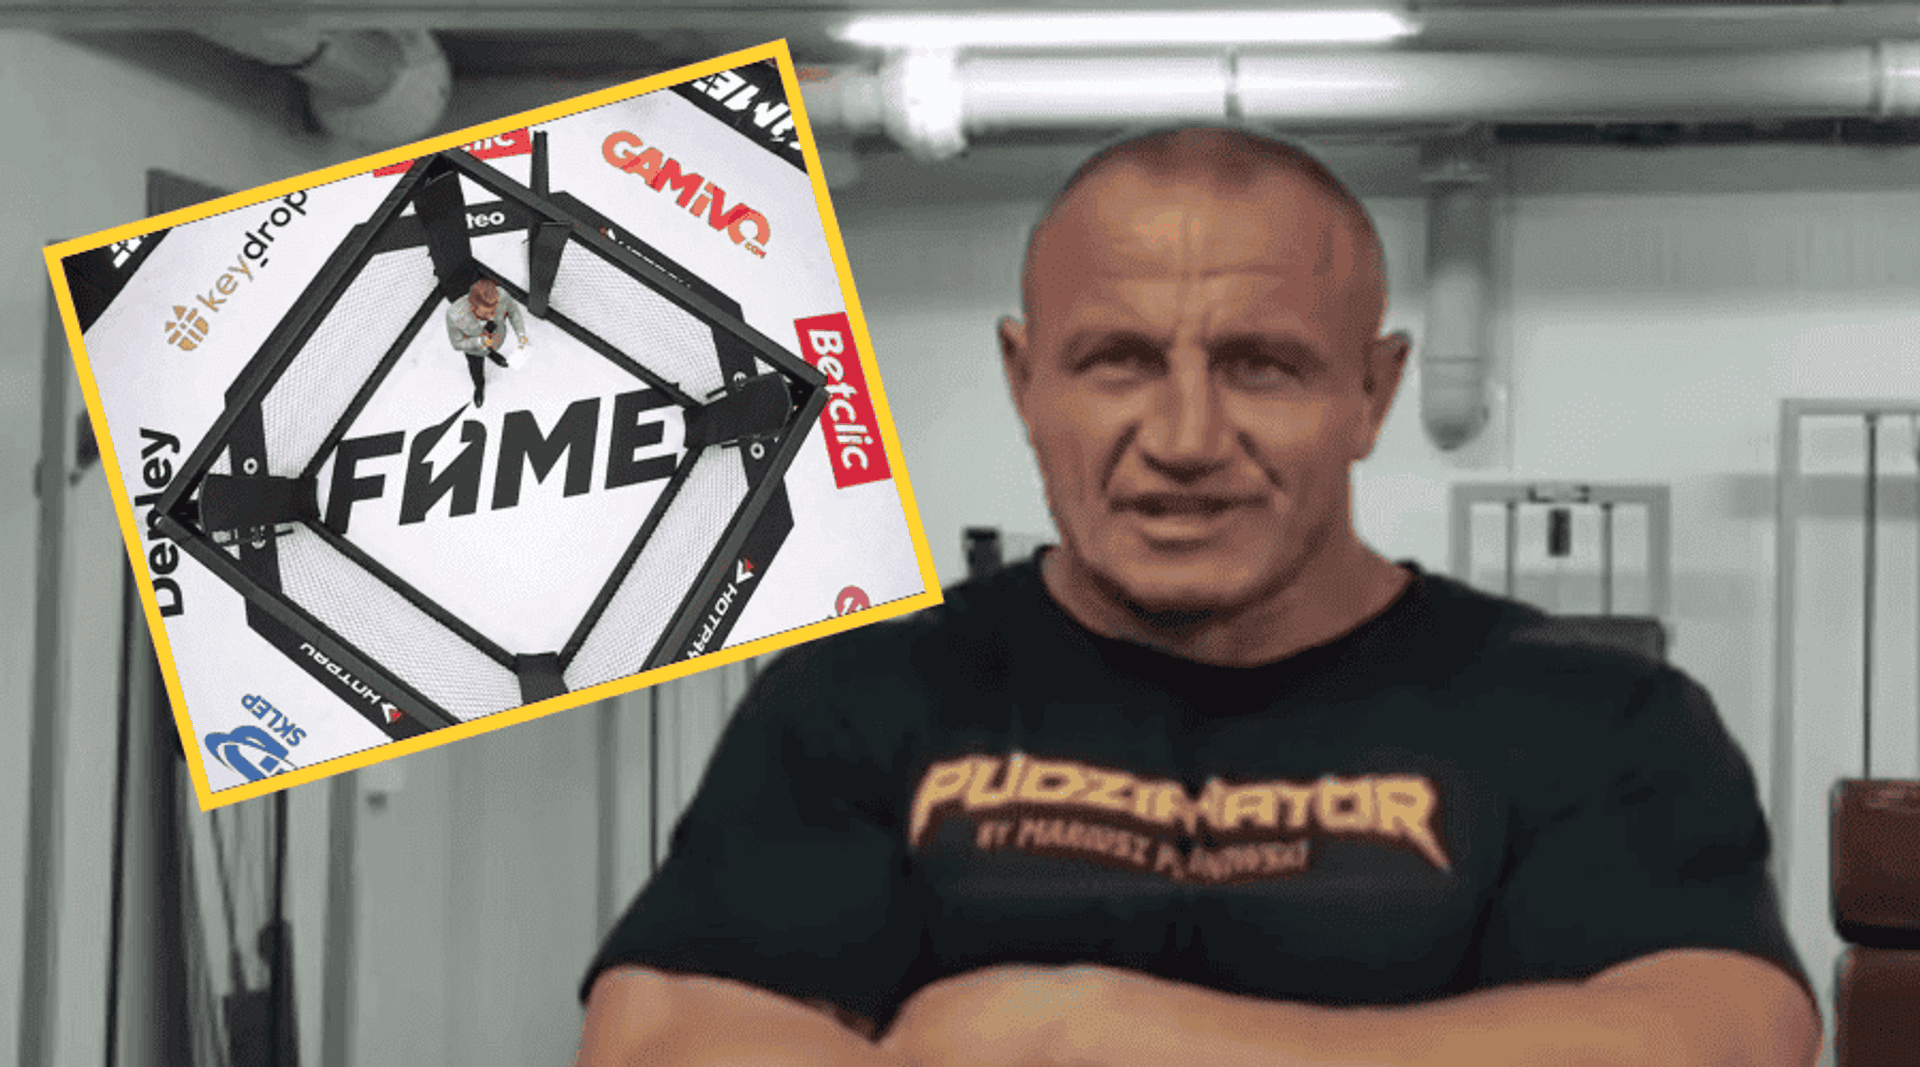 Mariusz Pudzianowski Fame MMA Piotr Szeliga Klatka Rzymska